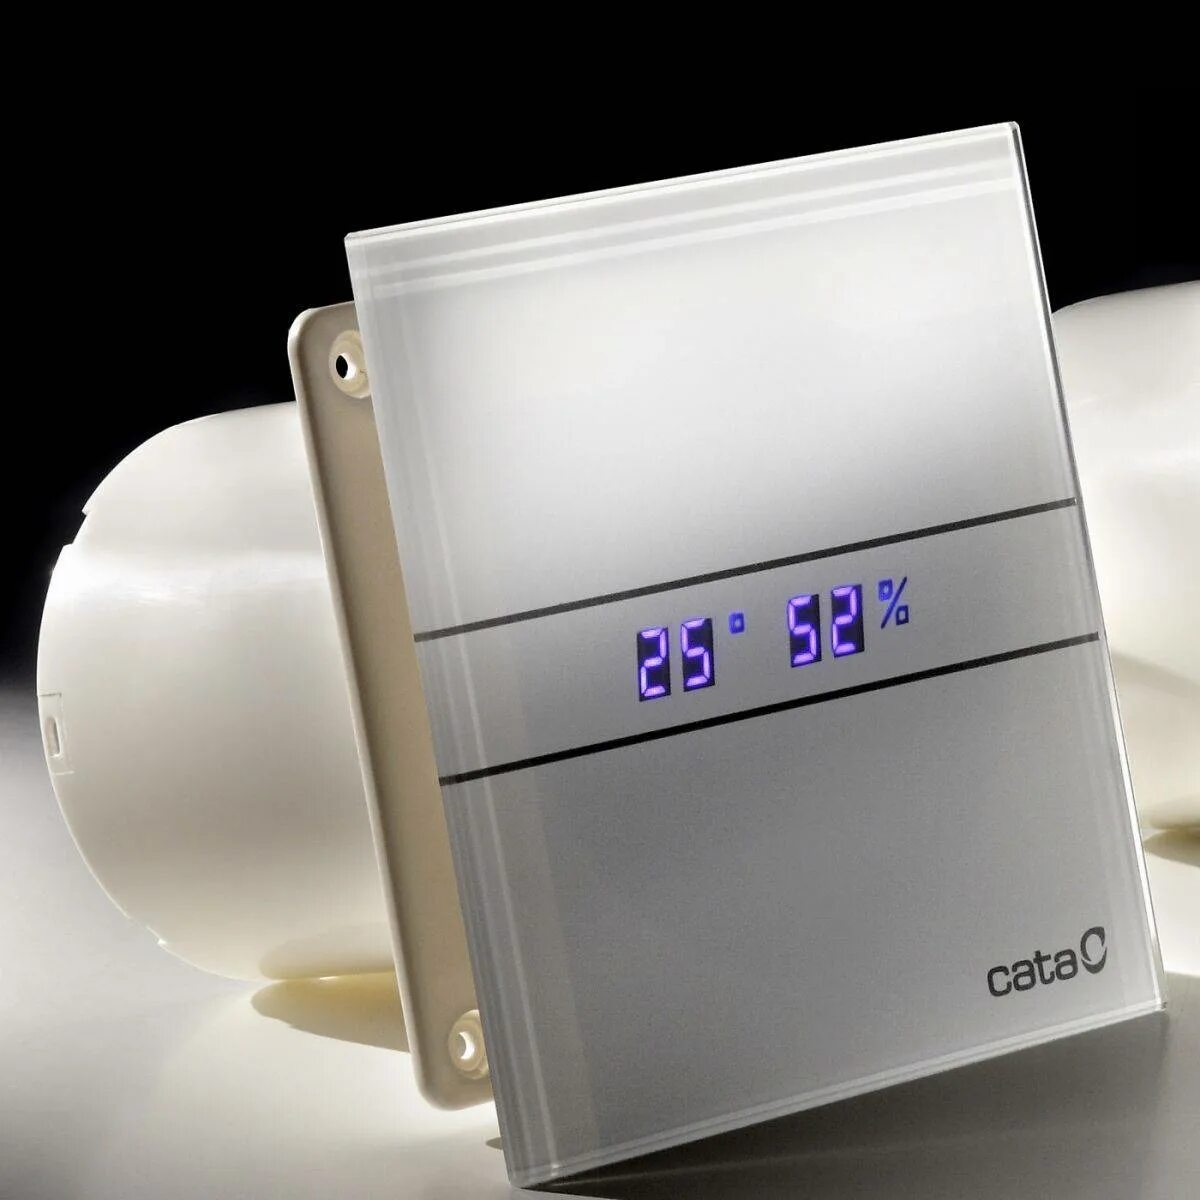 Вентилятор Cata e-100 GTH. Вентилятор вытяжной для ванной Cata. Вентилятор вытяжной 100 для ванной с датчиком влажности. Вентилятор с датчиком влажности для ванной 100мм. Датчик влажности для ванной